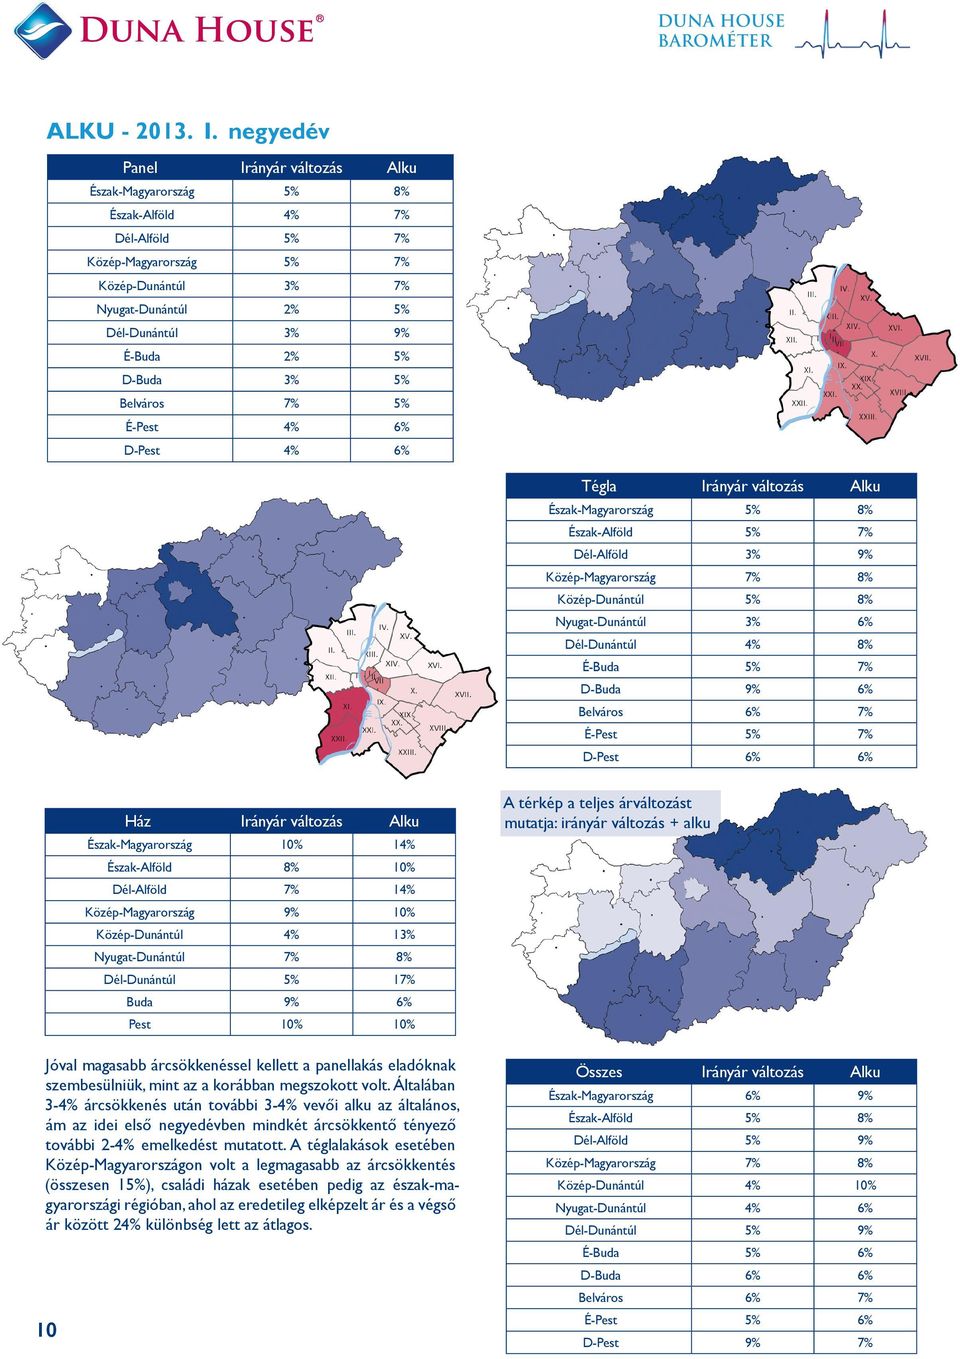 D-Buda 3% 5% Belváros 7% 5% É-Pest 4% 6% D-Pest 4% 6% Tégla Irányár változás Alku Észak-Magyarország 5% 8% Észak-Alföld 5% 7% Dél-Alföld 3% 9% Közép-Magyarország 7% 8% Közép-Dunántúl 5% 8%